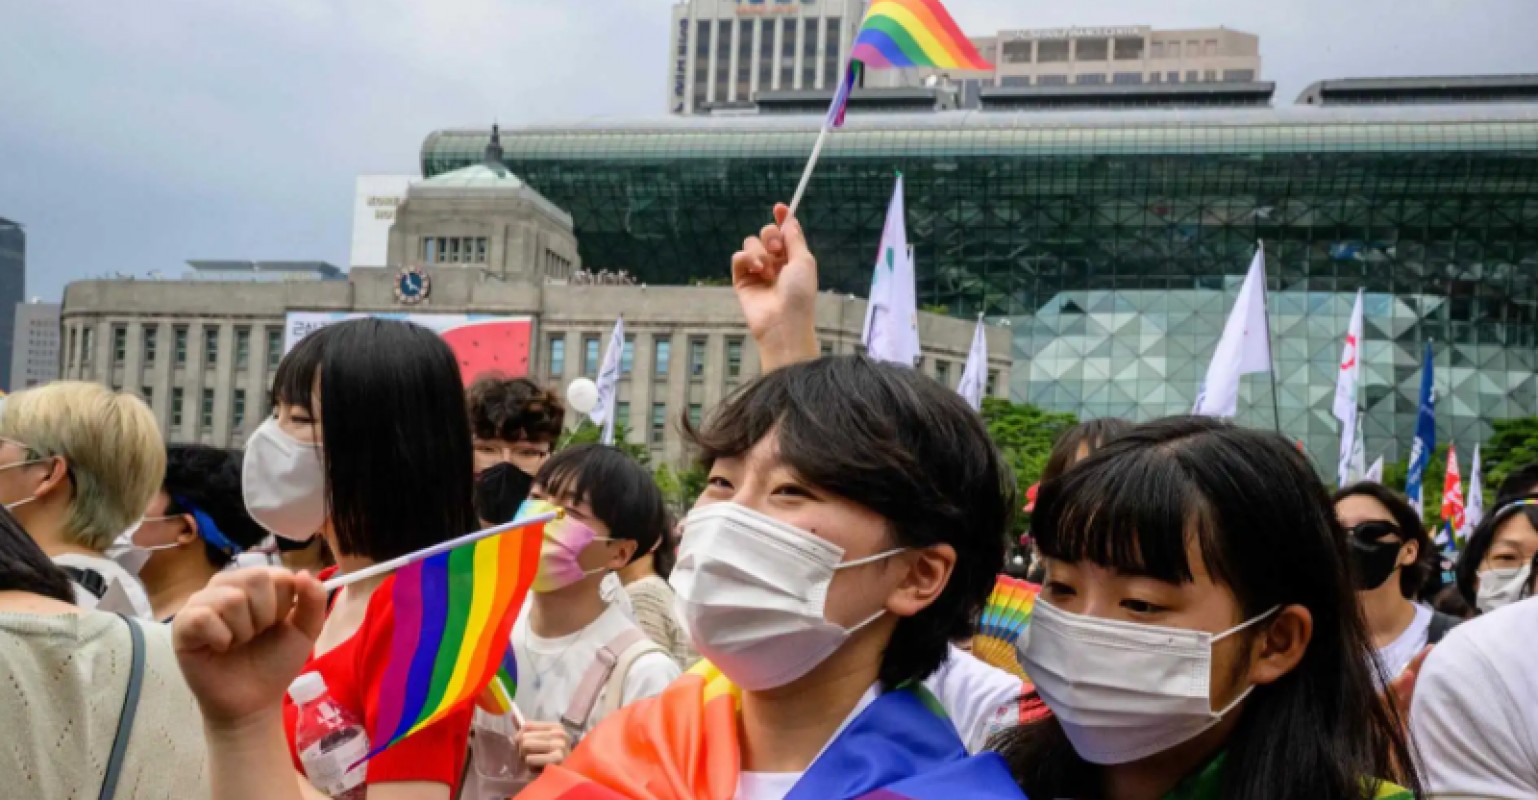 Corée du sud : La Pride de Séoul se déroule malgré l'opposition du maire conservateur